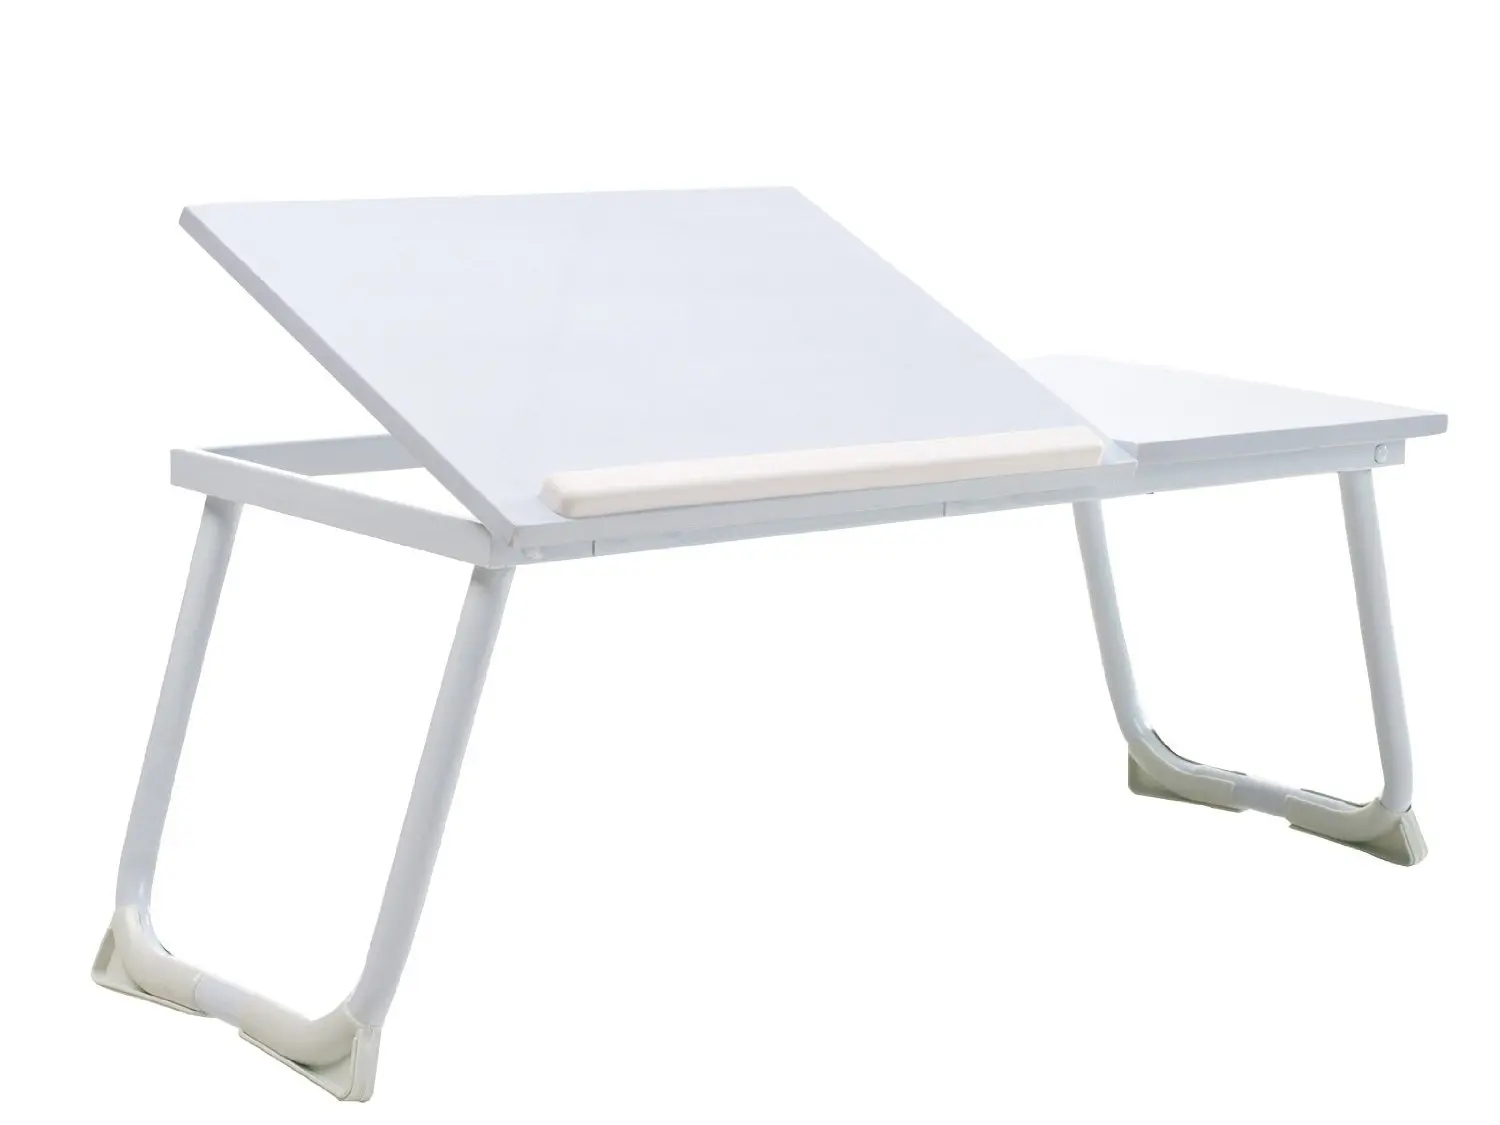 Столик для письма. Столик для ноутбука складной трансформер икеа. Столик для ноутбука Бюрократ lt-001/White. Складной компьютерный столик икеа. Ikea складной стол для ноутбука.